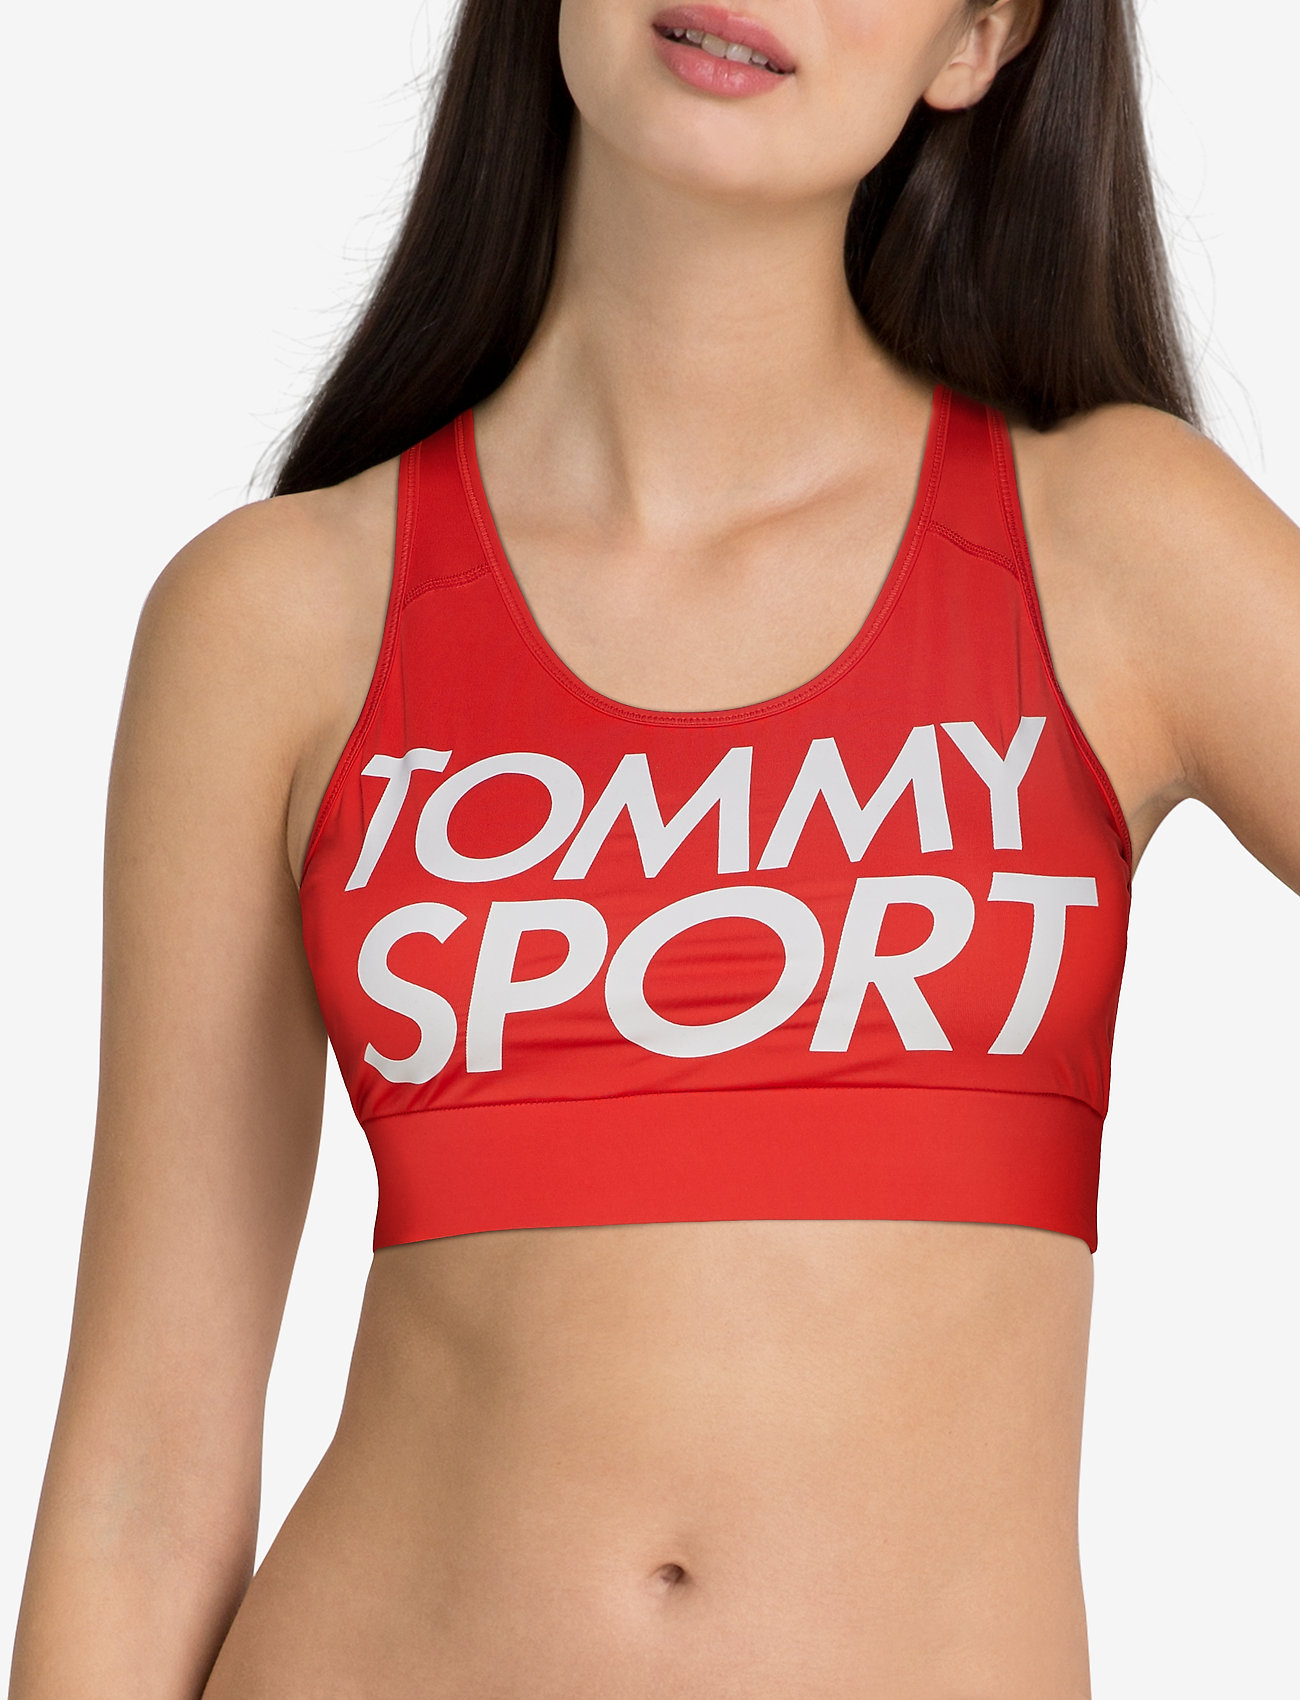 tommy sports bra